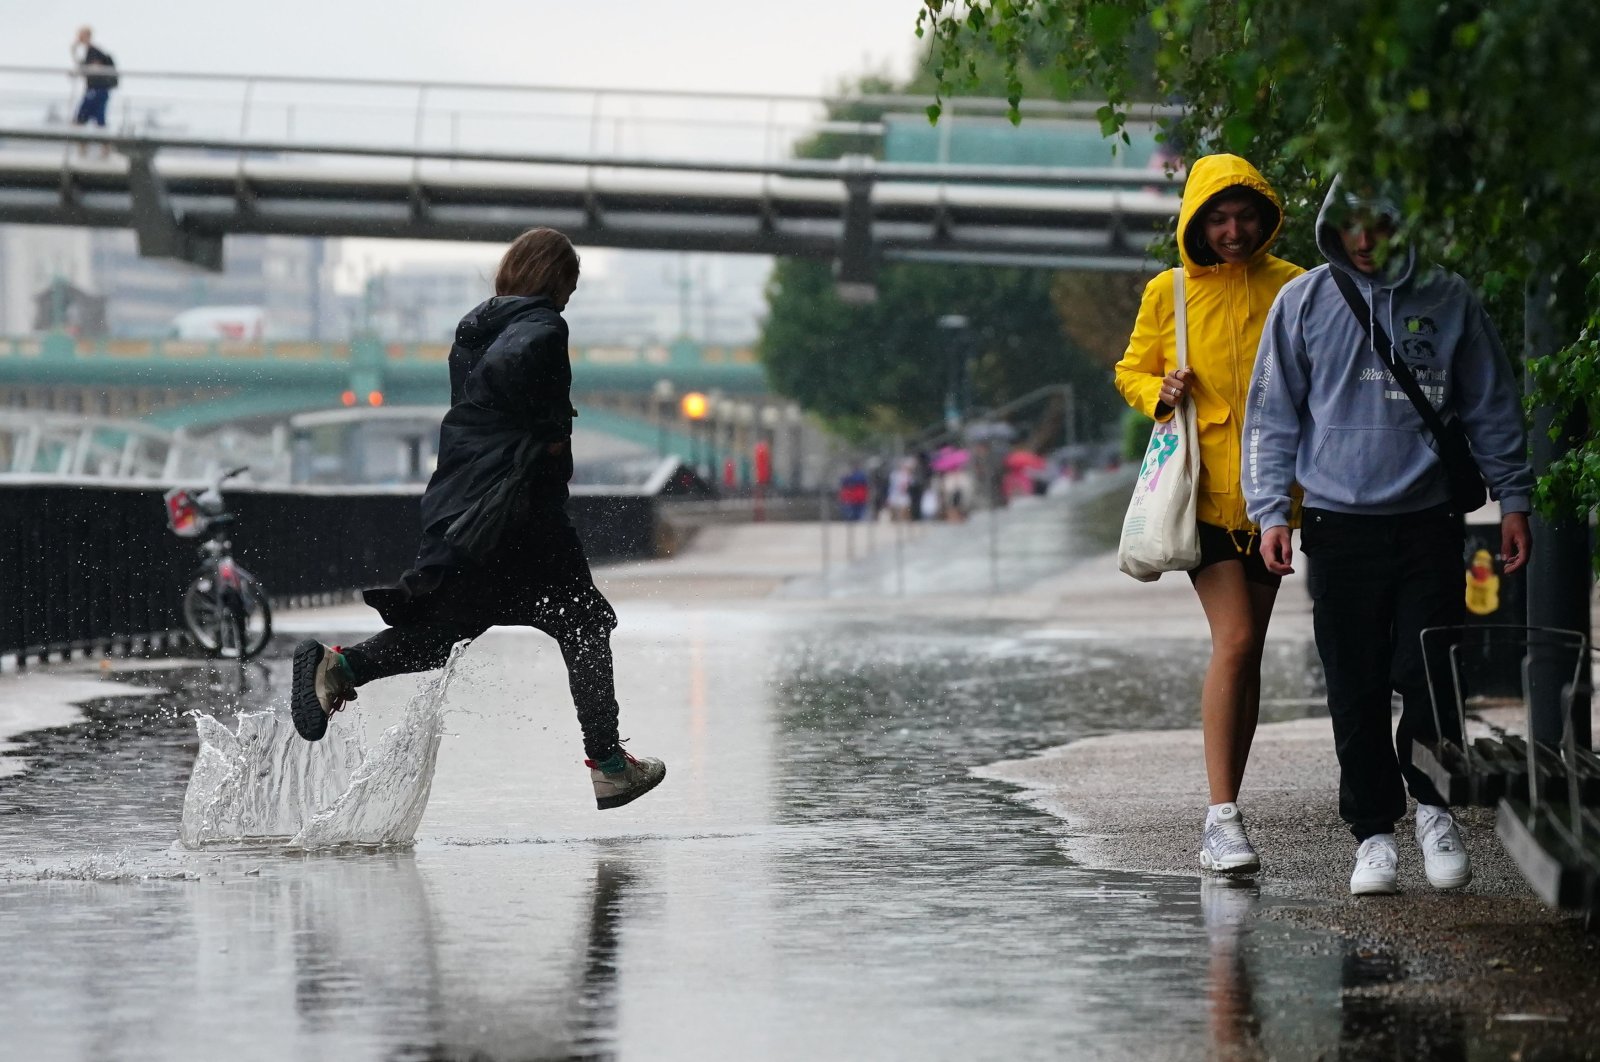 People run in the rain in London, U.K., Aug. 17, 2022. (AP Photo)